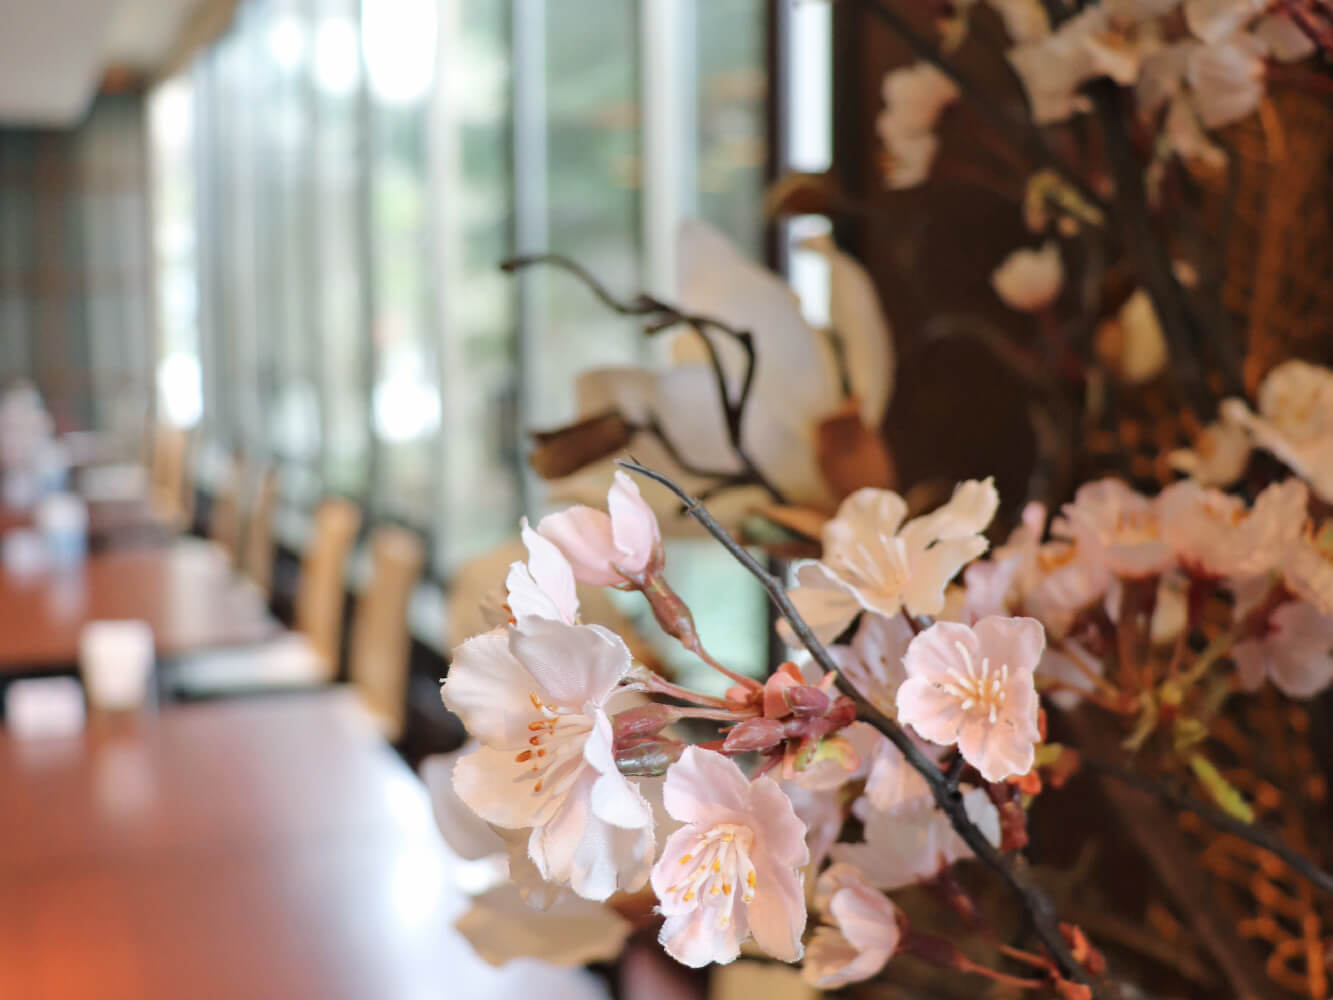 京王プラザホテル札幌-お花見の雰囲気を感じられる店内装飾